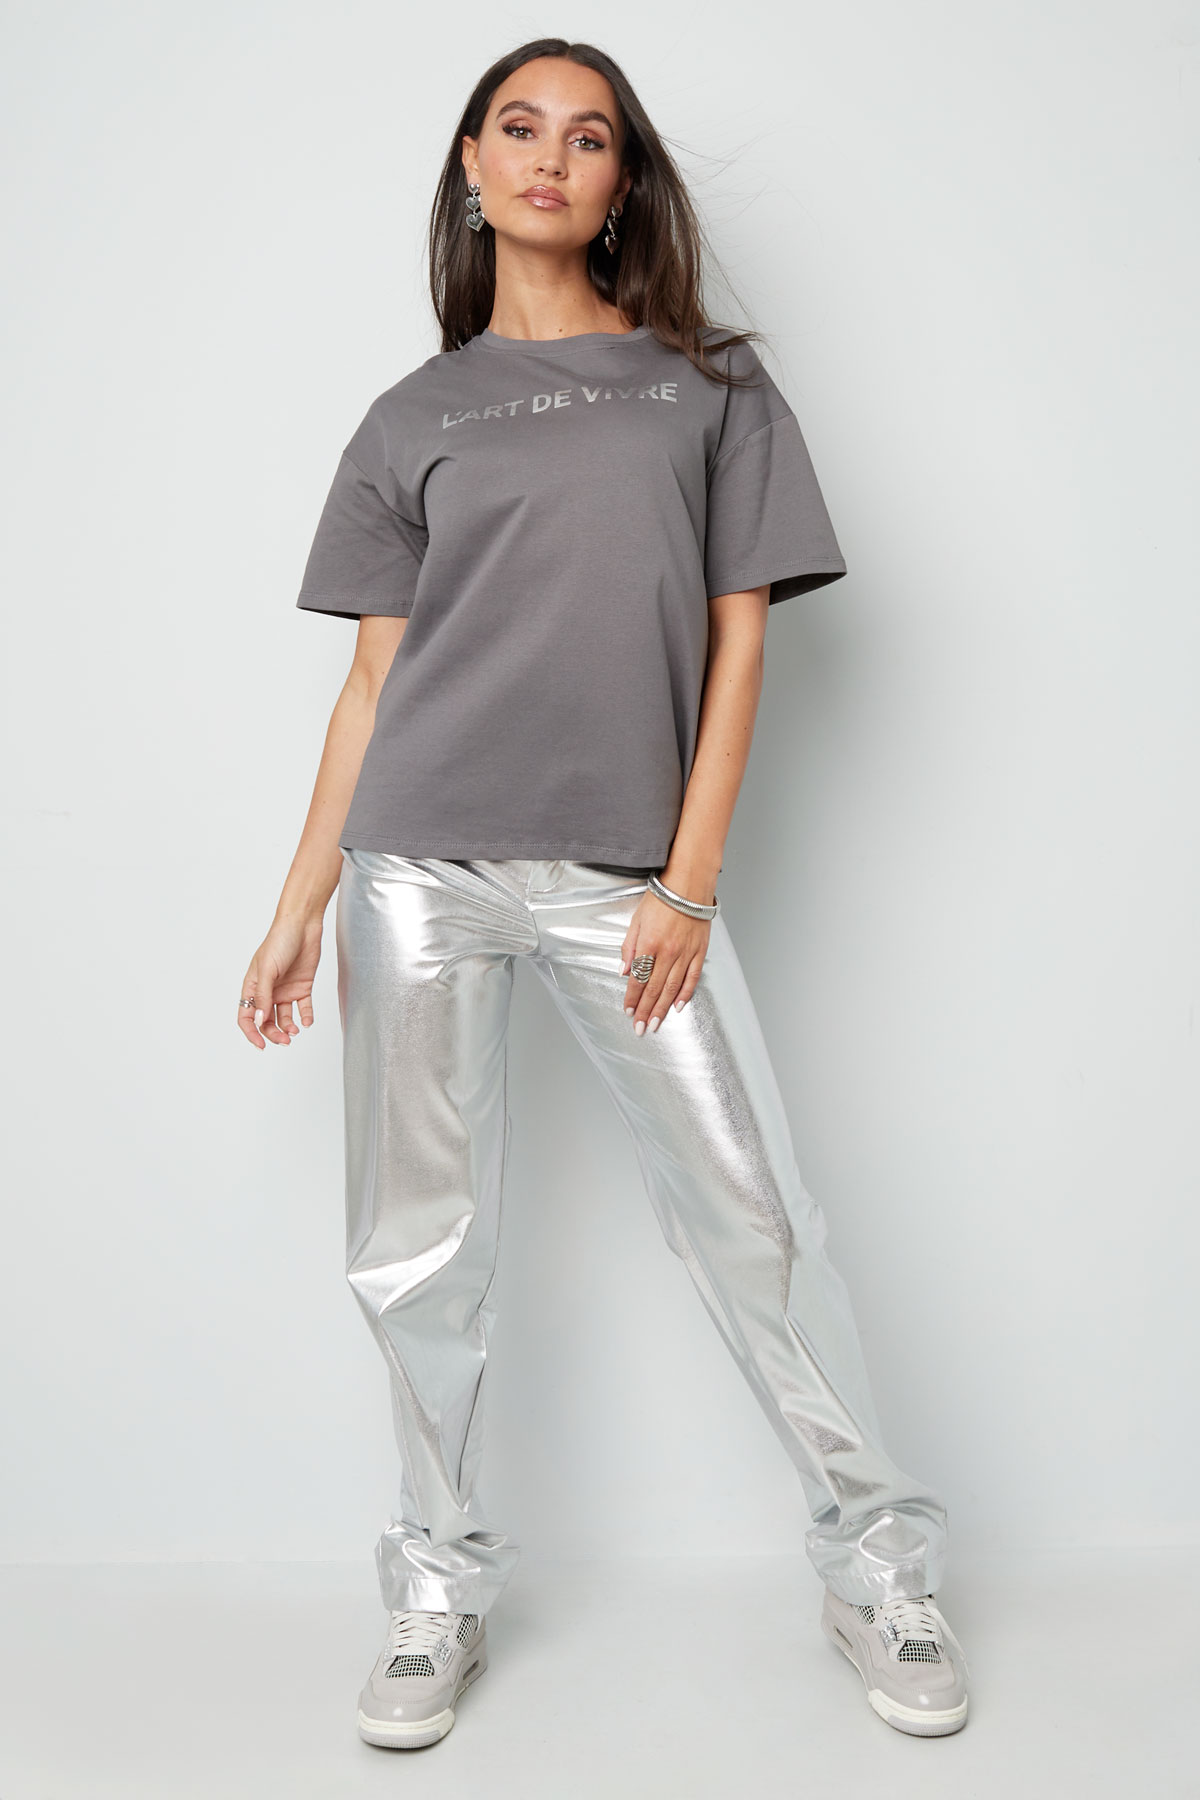 T-shirt l'art de vivre - grigio argento h5 Immagine3